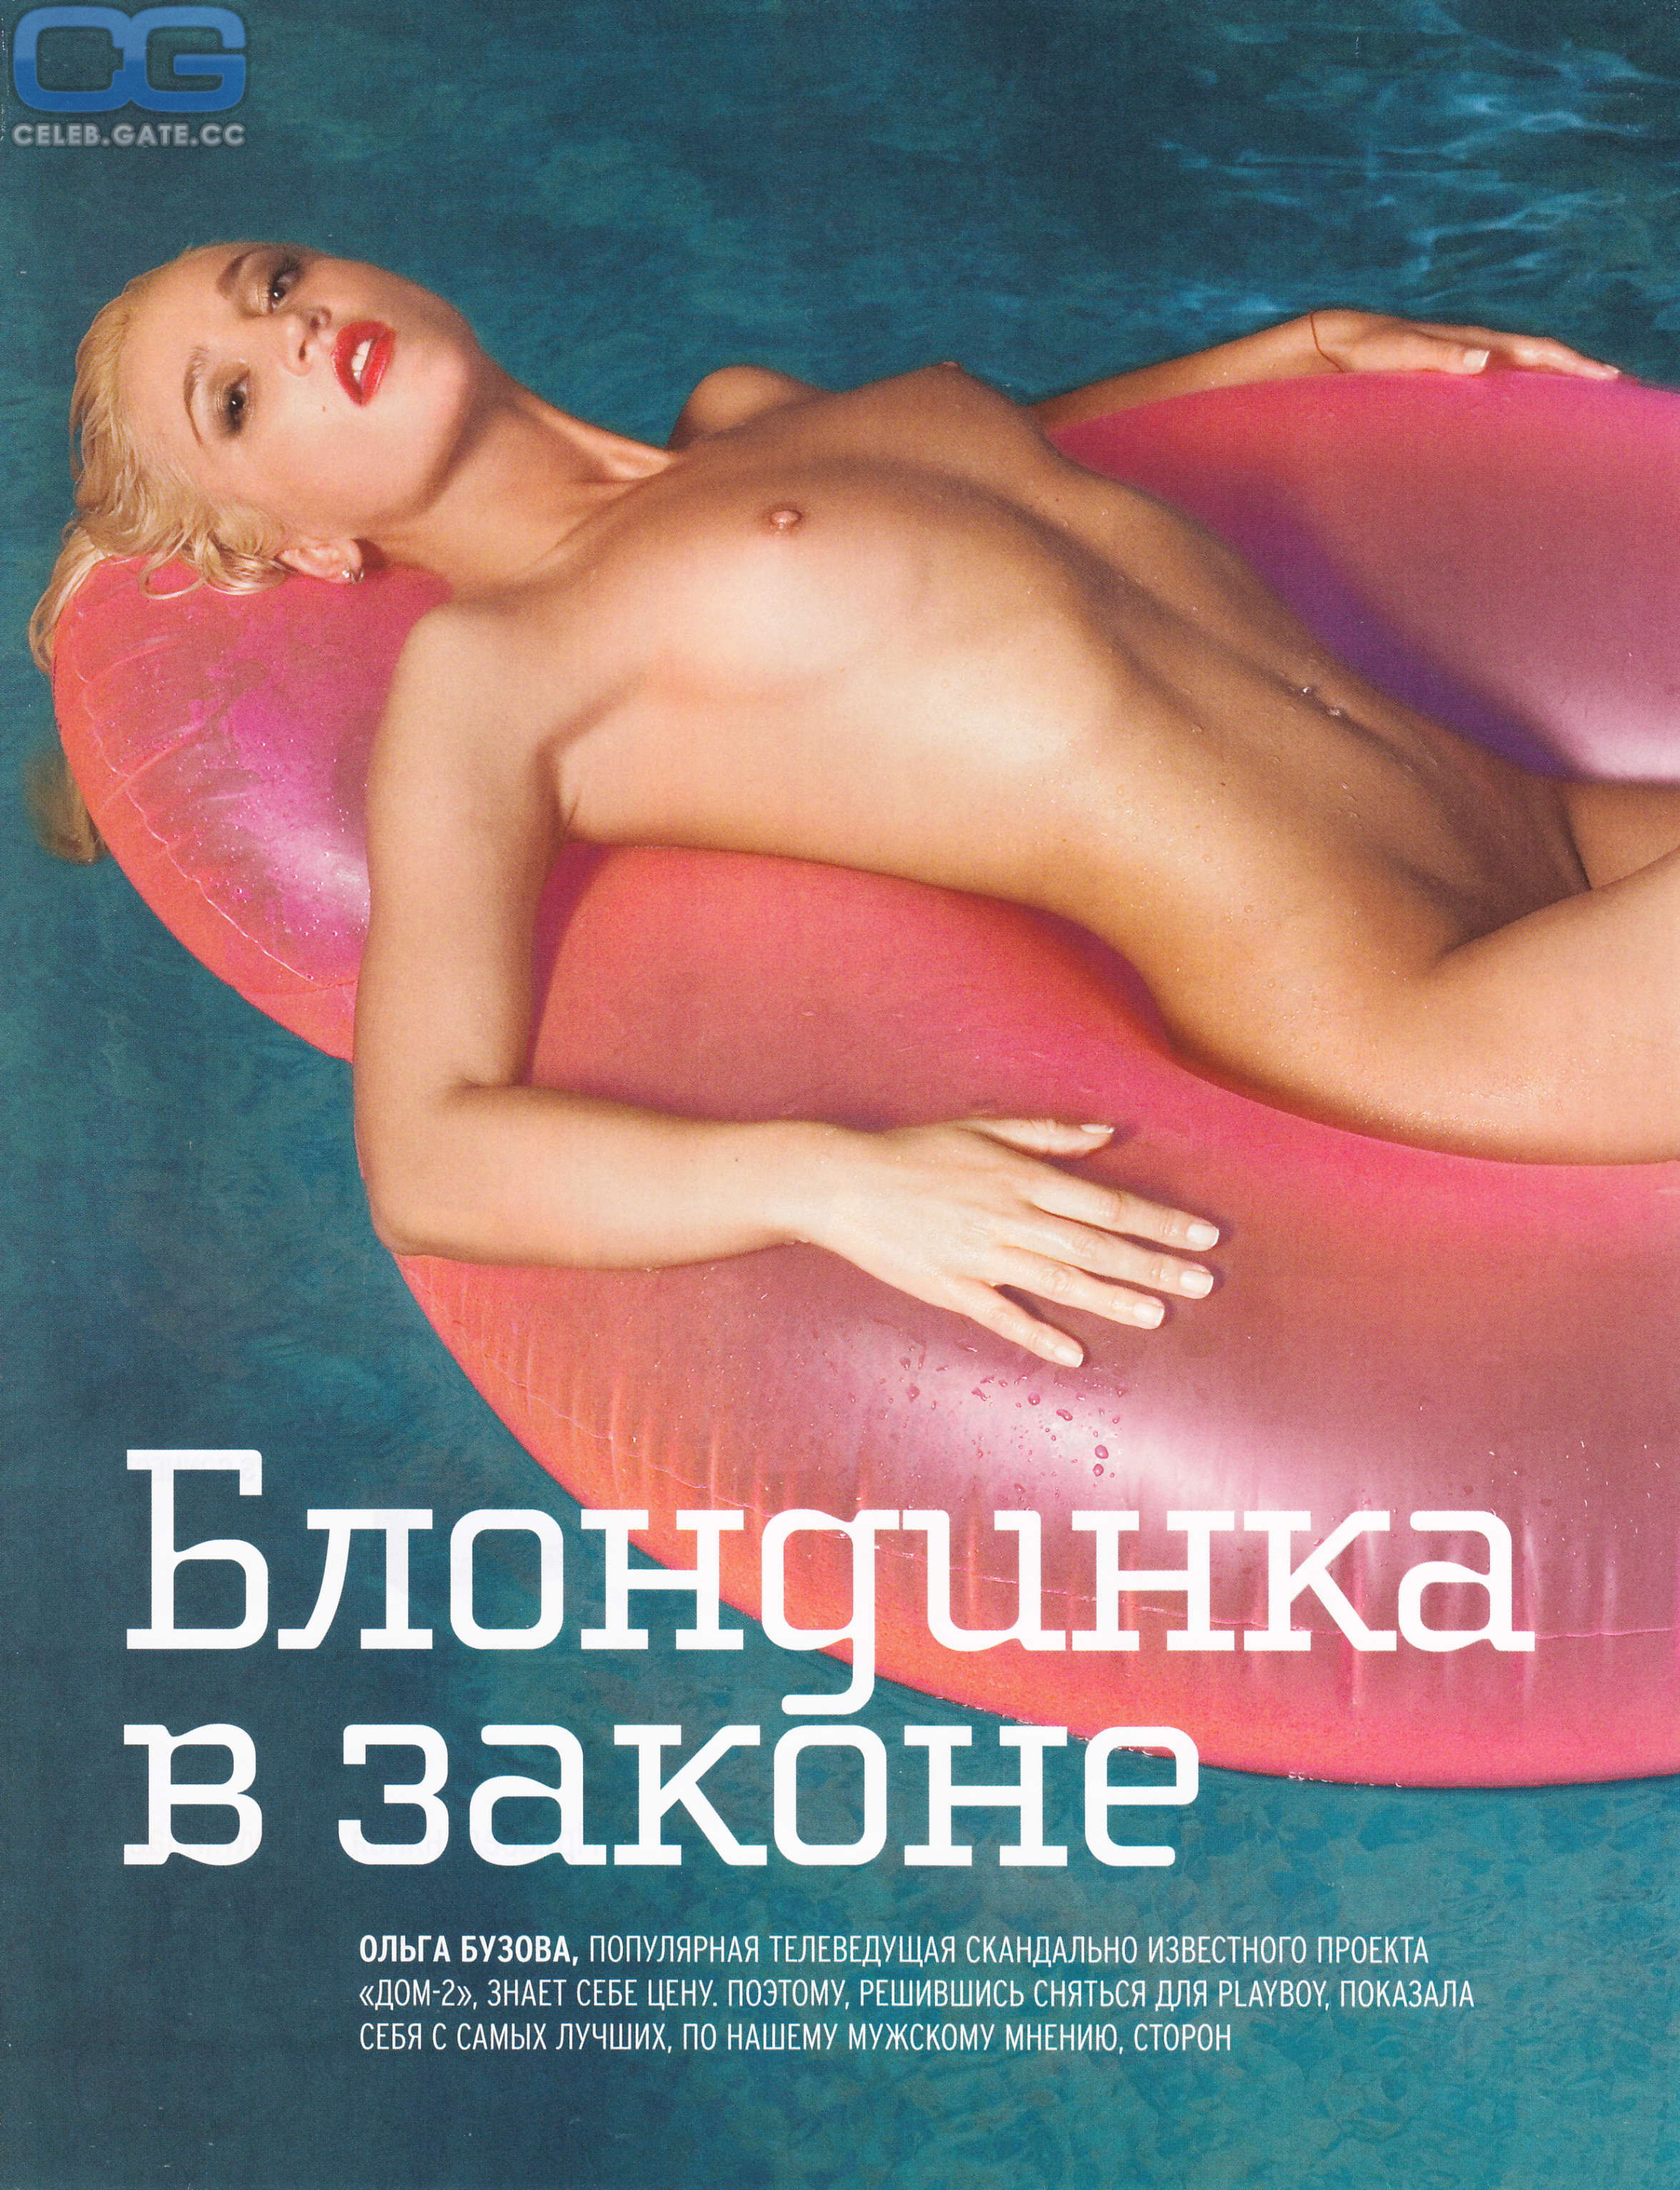 Olga Buzova playboy nudes